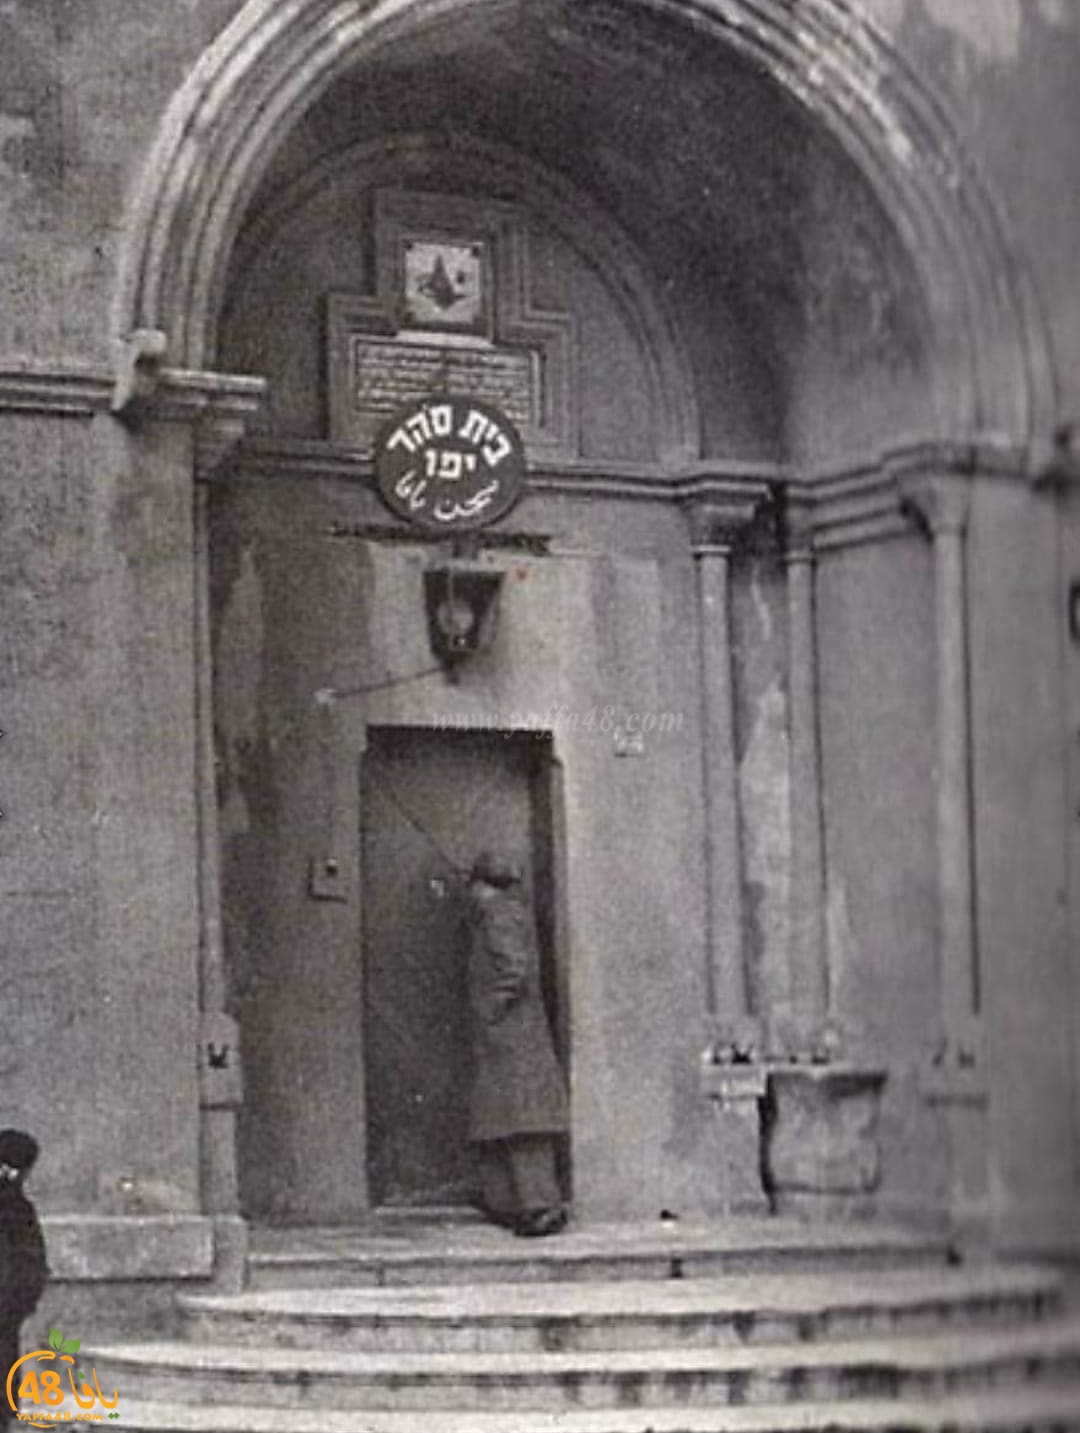 صورة نادرة لسجن القشلة في يافا يعود تاريخها لعام 1940